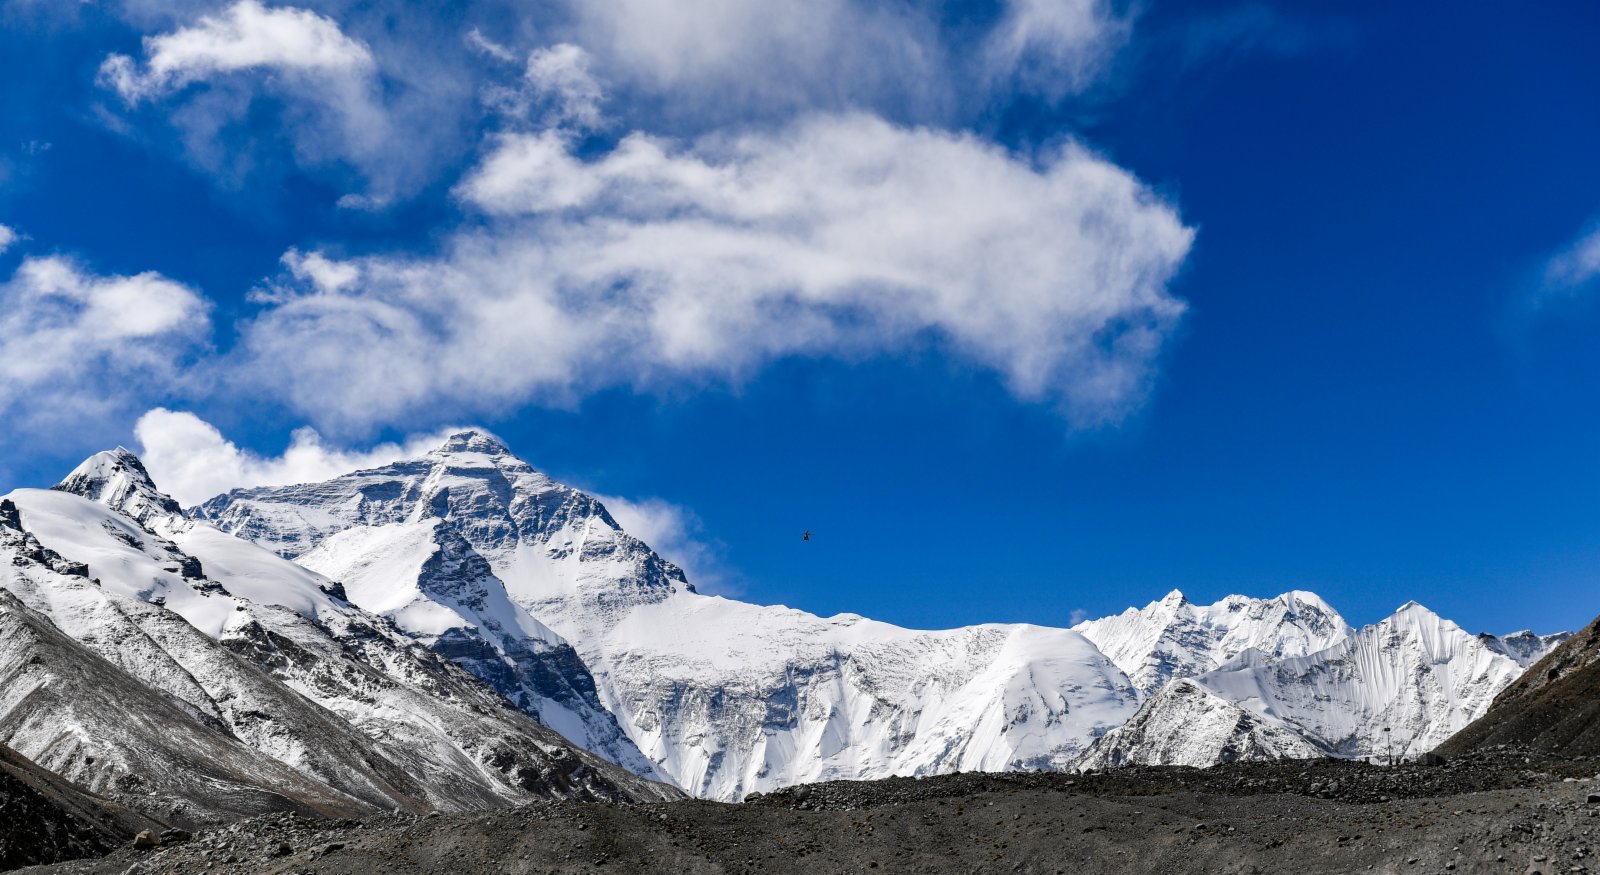  這是5月5日拍攝的珠穆朗瑪峰。